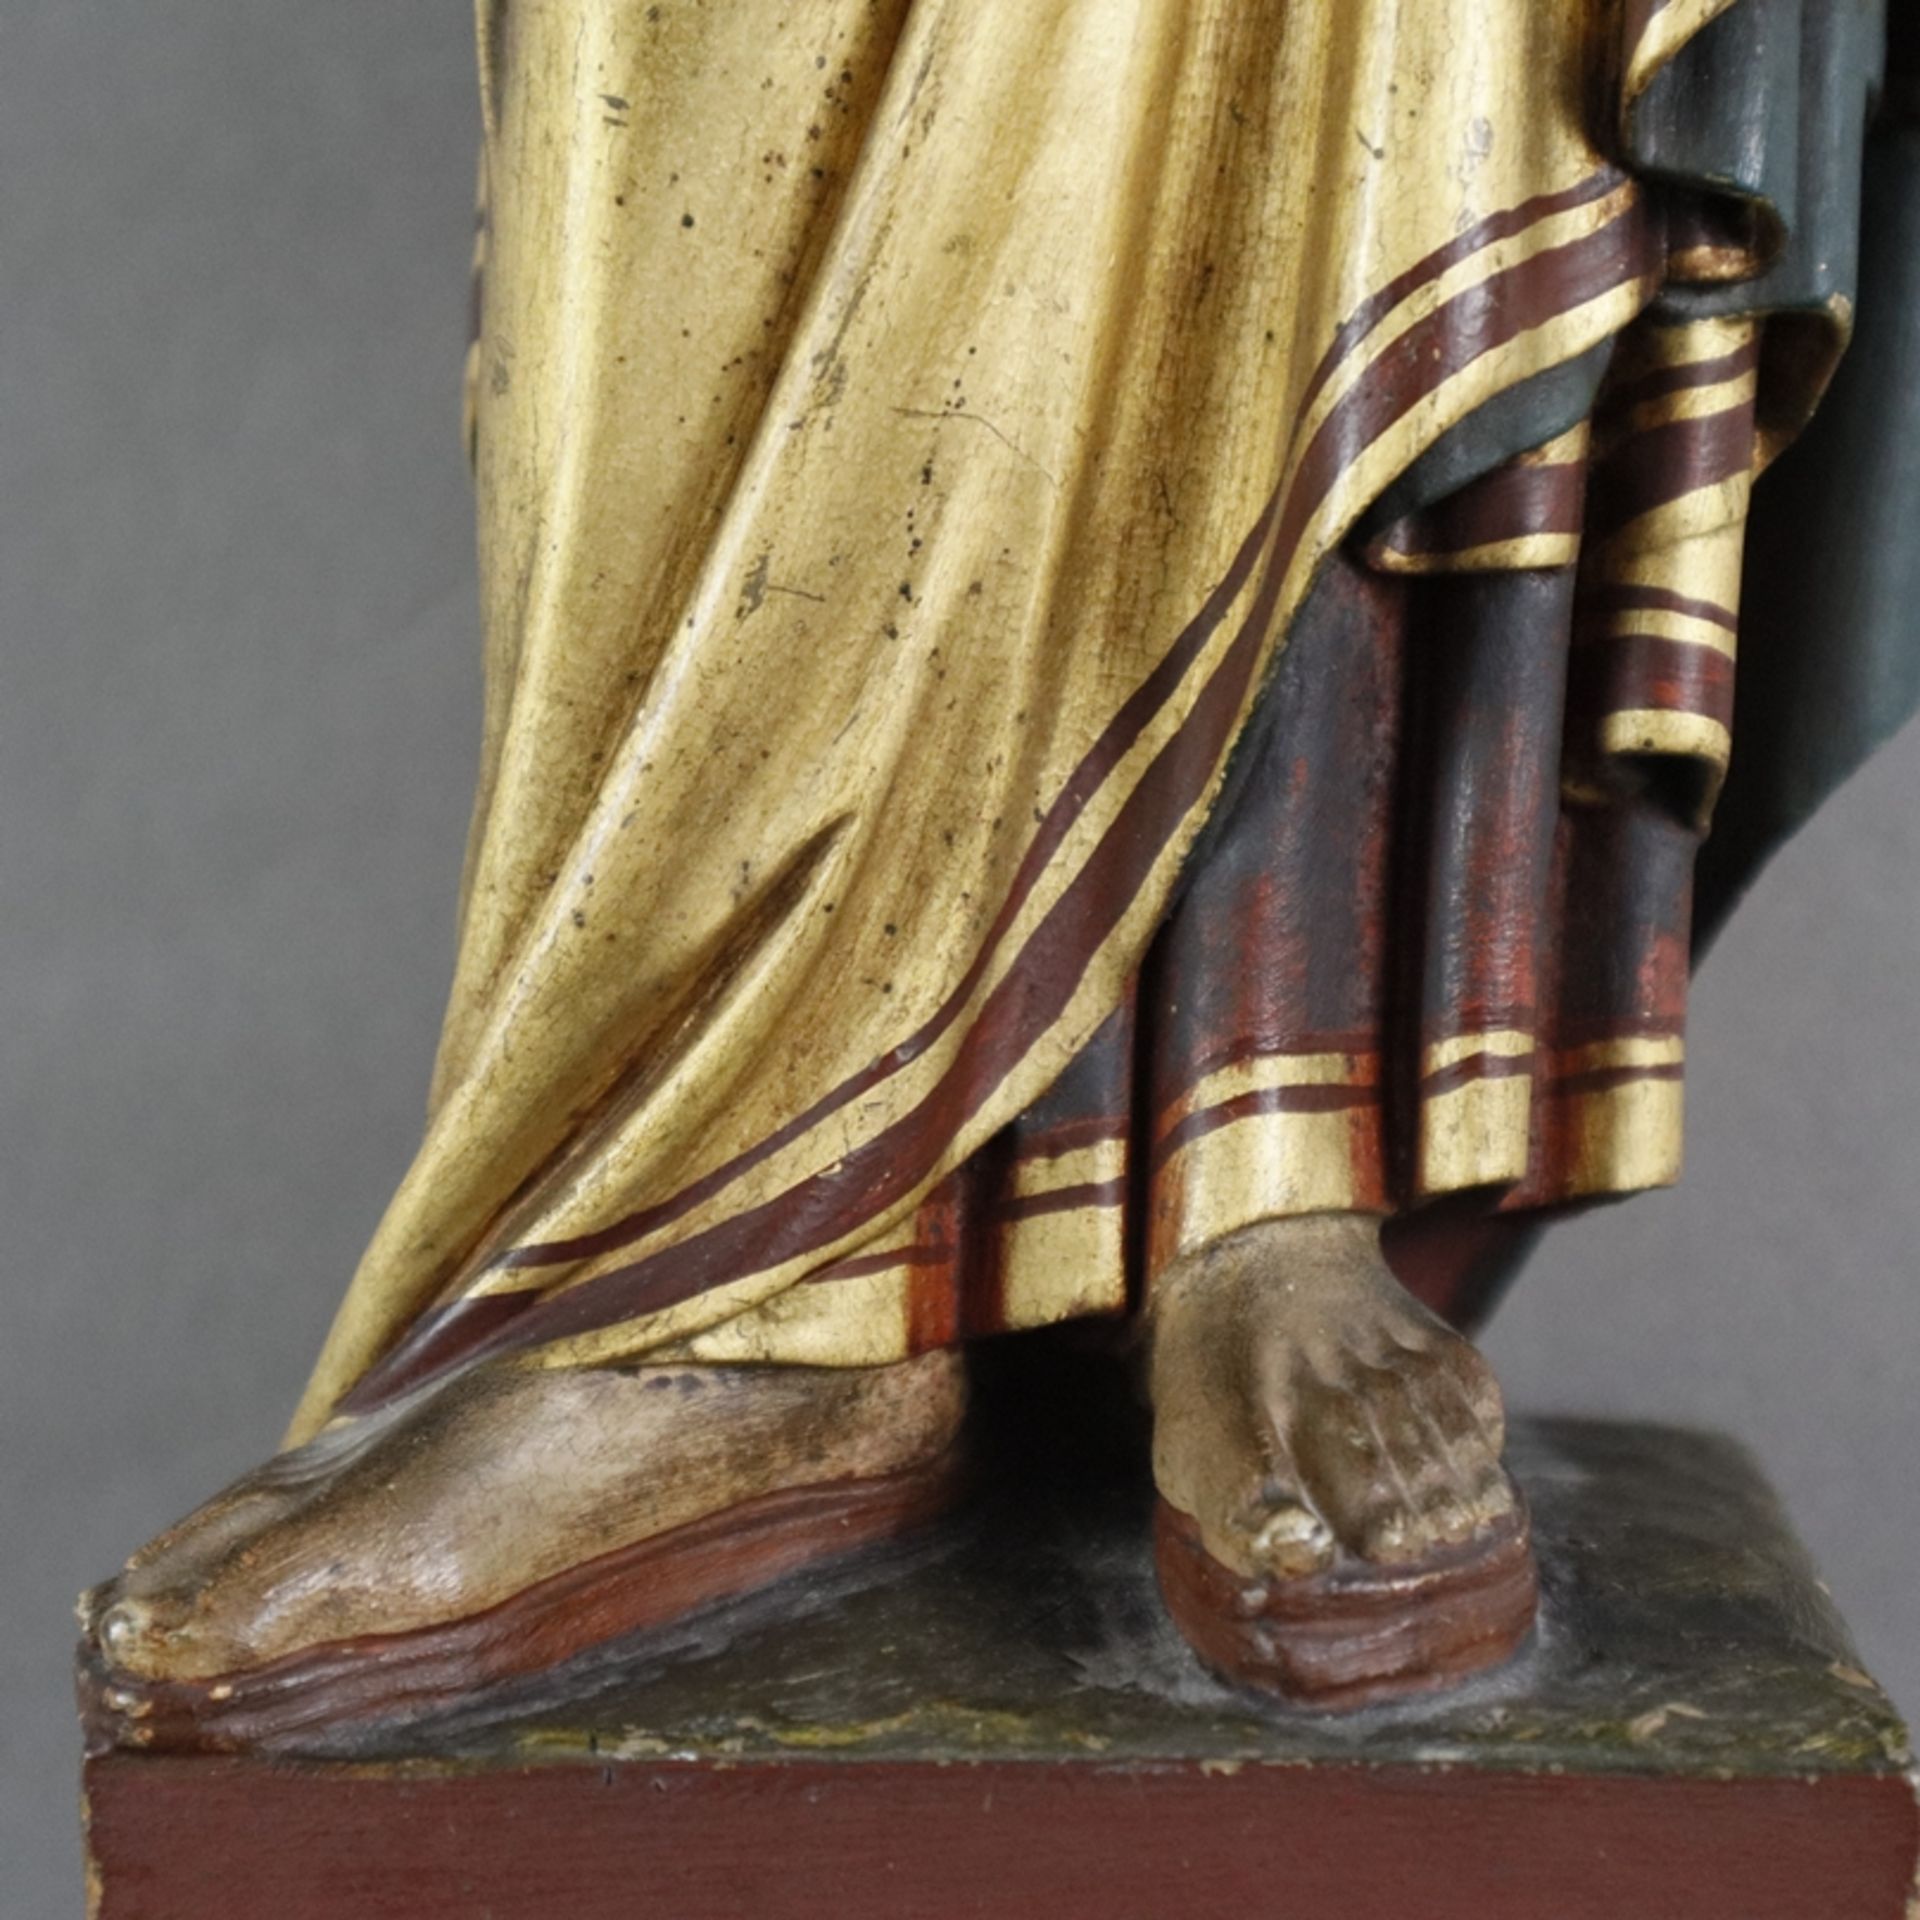 Holzfigur "Hl. Petrus" - vollrund geschnitzt, polychrom und goldgefasst, stehender Apostel Petrus i - Bild 5 aus 8